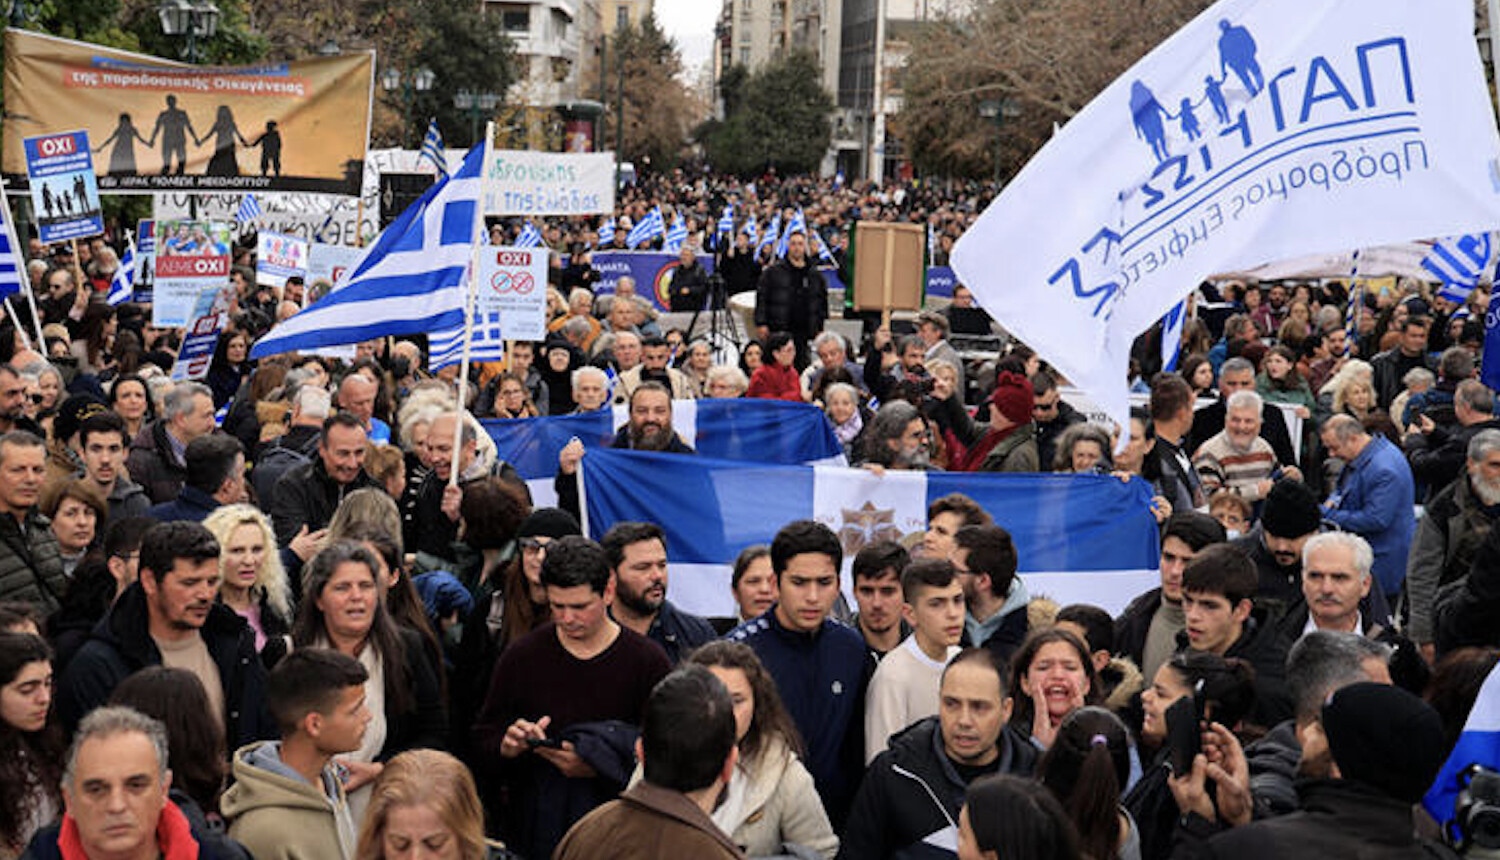 Мітинг проти гей-шлюбів в Афінах. Фото: orthodoxia.info